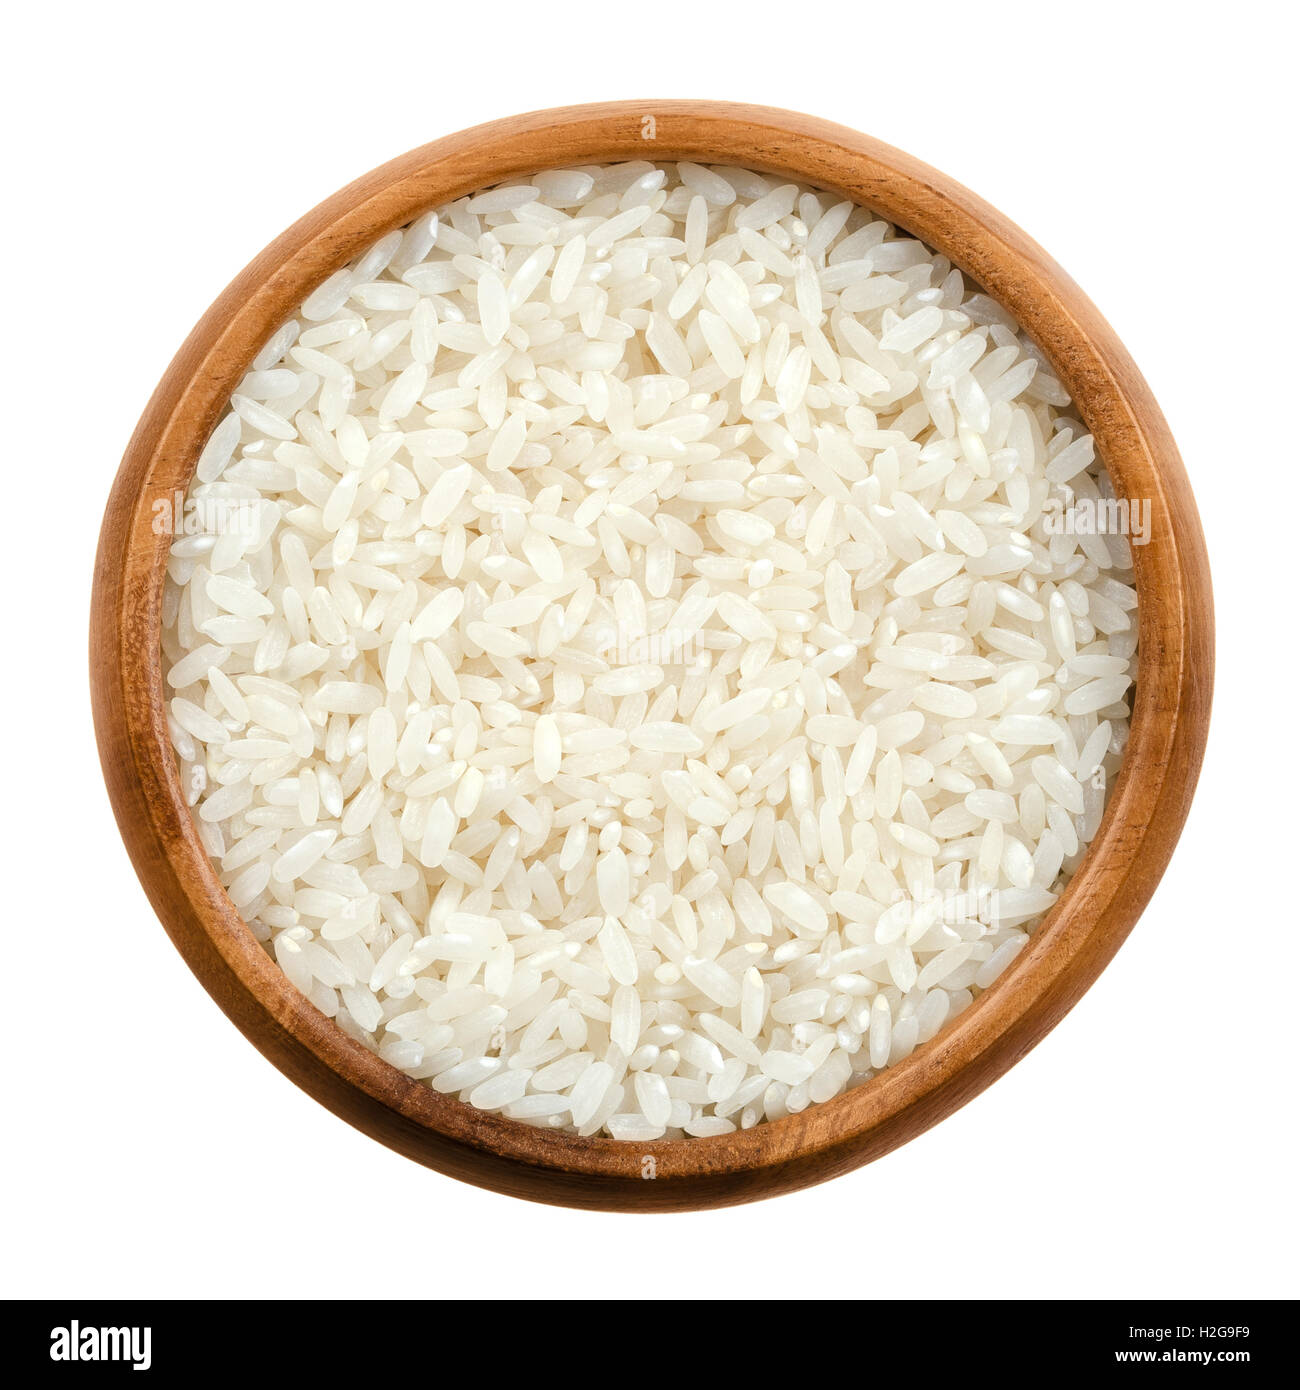 El arroz de sushi en un recipiente de madera sobre fondo blanco. Blanco de Grano corto arroz japonés, las semillas de la hierba de la Oryza sativa. Foto de stock